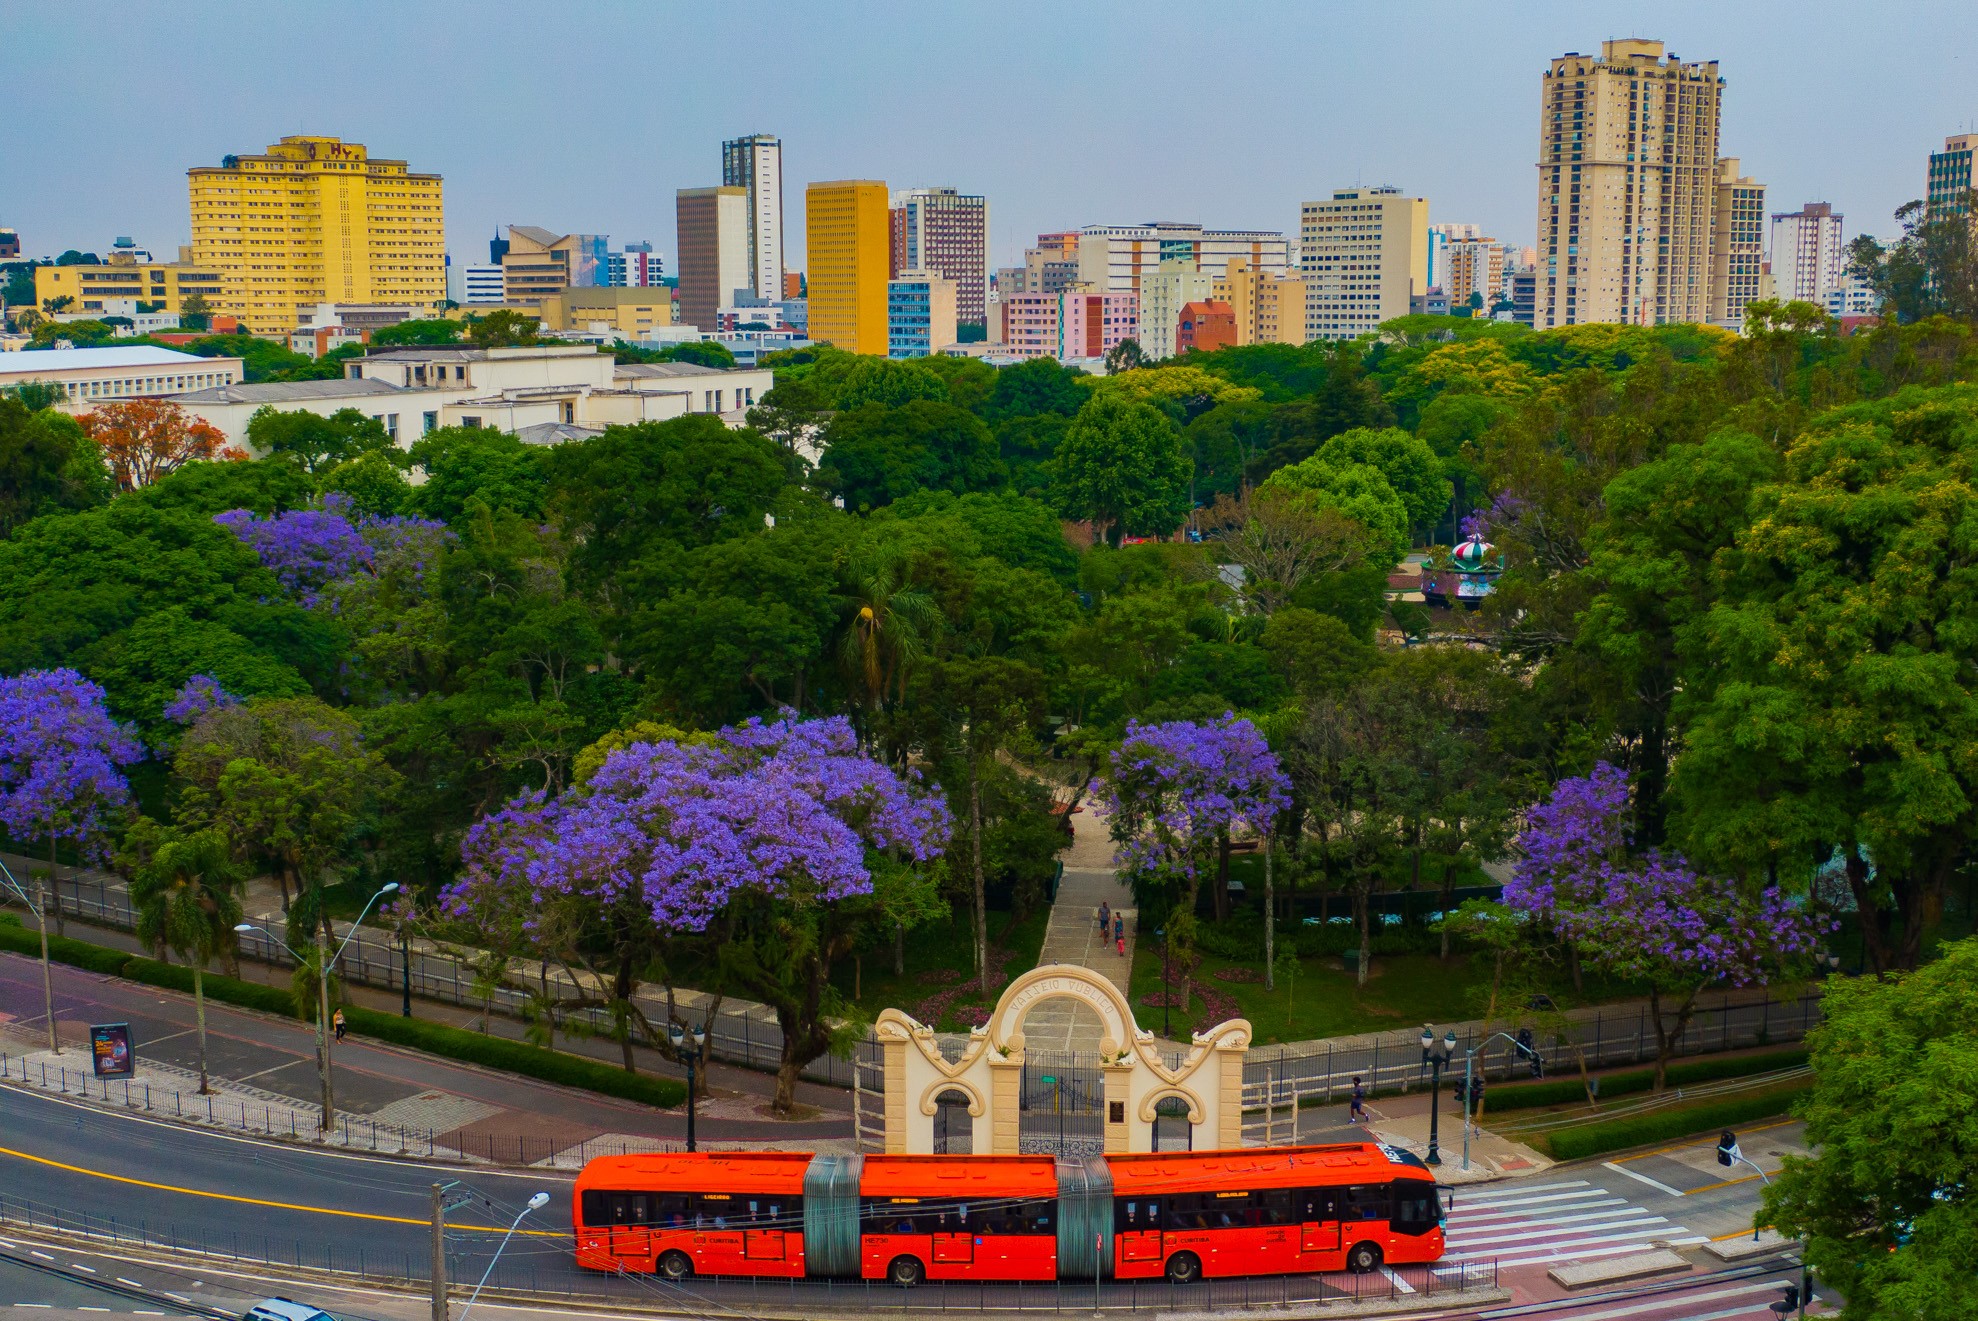 O Passeio Público já foi chamado de Jardim Botânico e foi o primeiro zoológico da cidade (Foto: Divulgação/ Prefeitura Municipal de Curitiba)